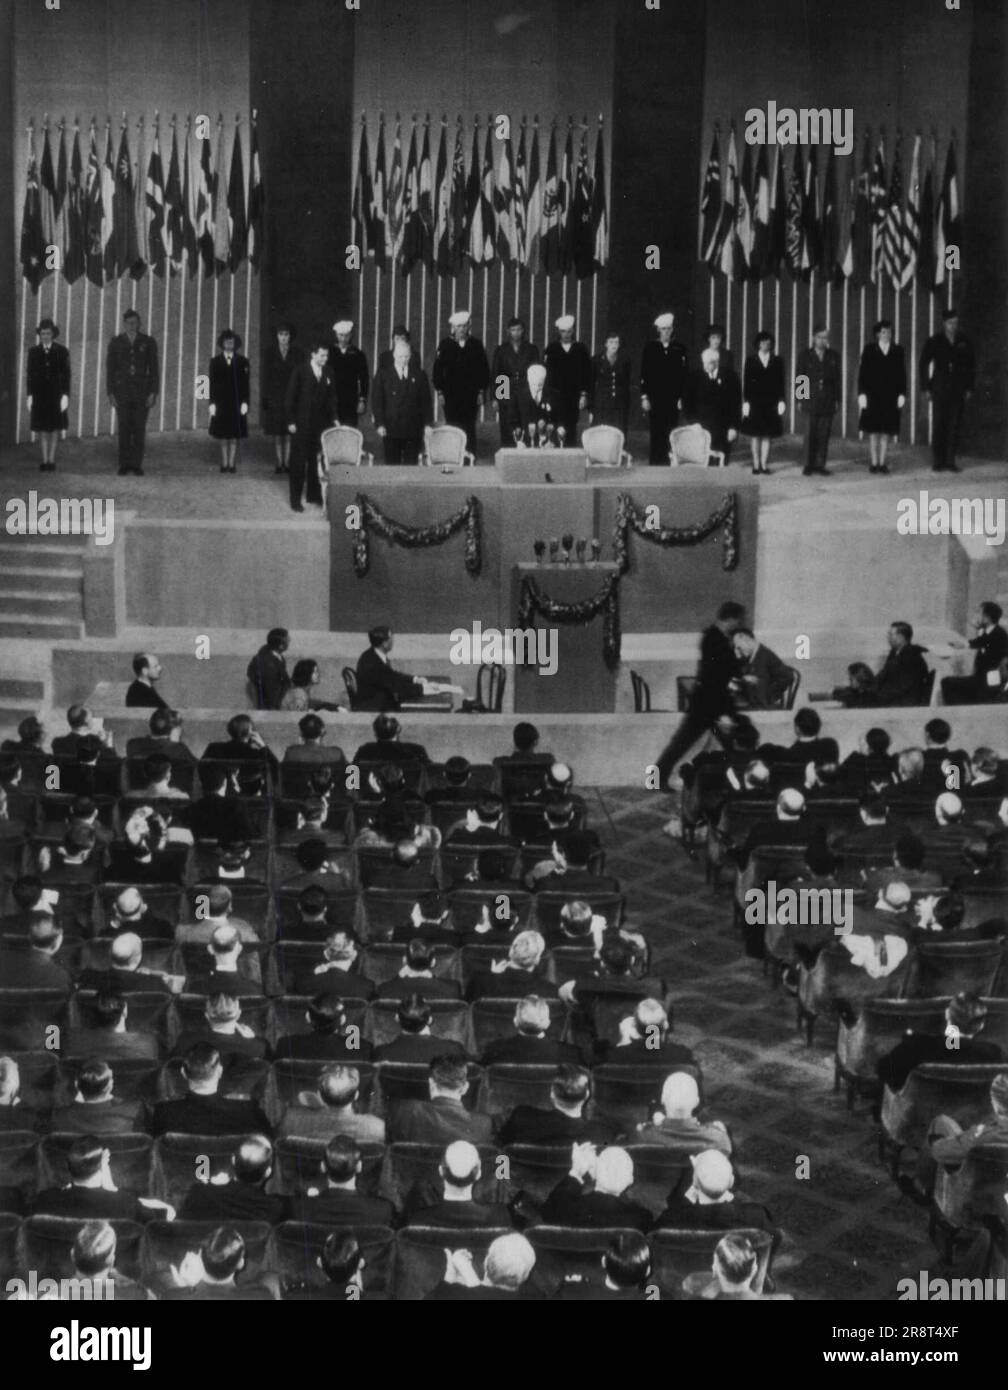 Stettinius apre la Conferenza -- il Segretario di Stato Edward Stettinius apre oggi la Conferenza sulla sicurezza delle Nazioni Unite con la sua introduzione al discorso radiofonico del Presidente Harry S. Truman. Aprile 25, 1945. (Foto di AP Wirephoto). Foto Stock